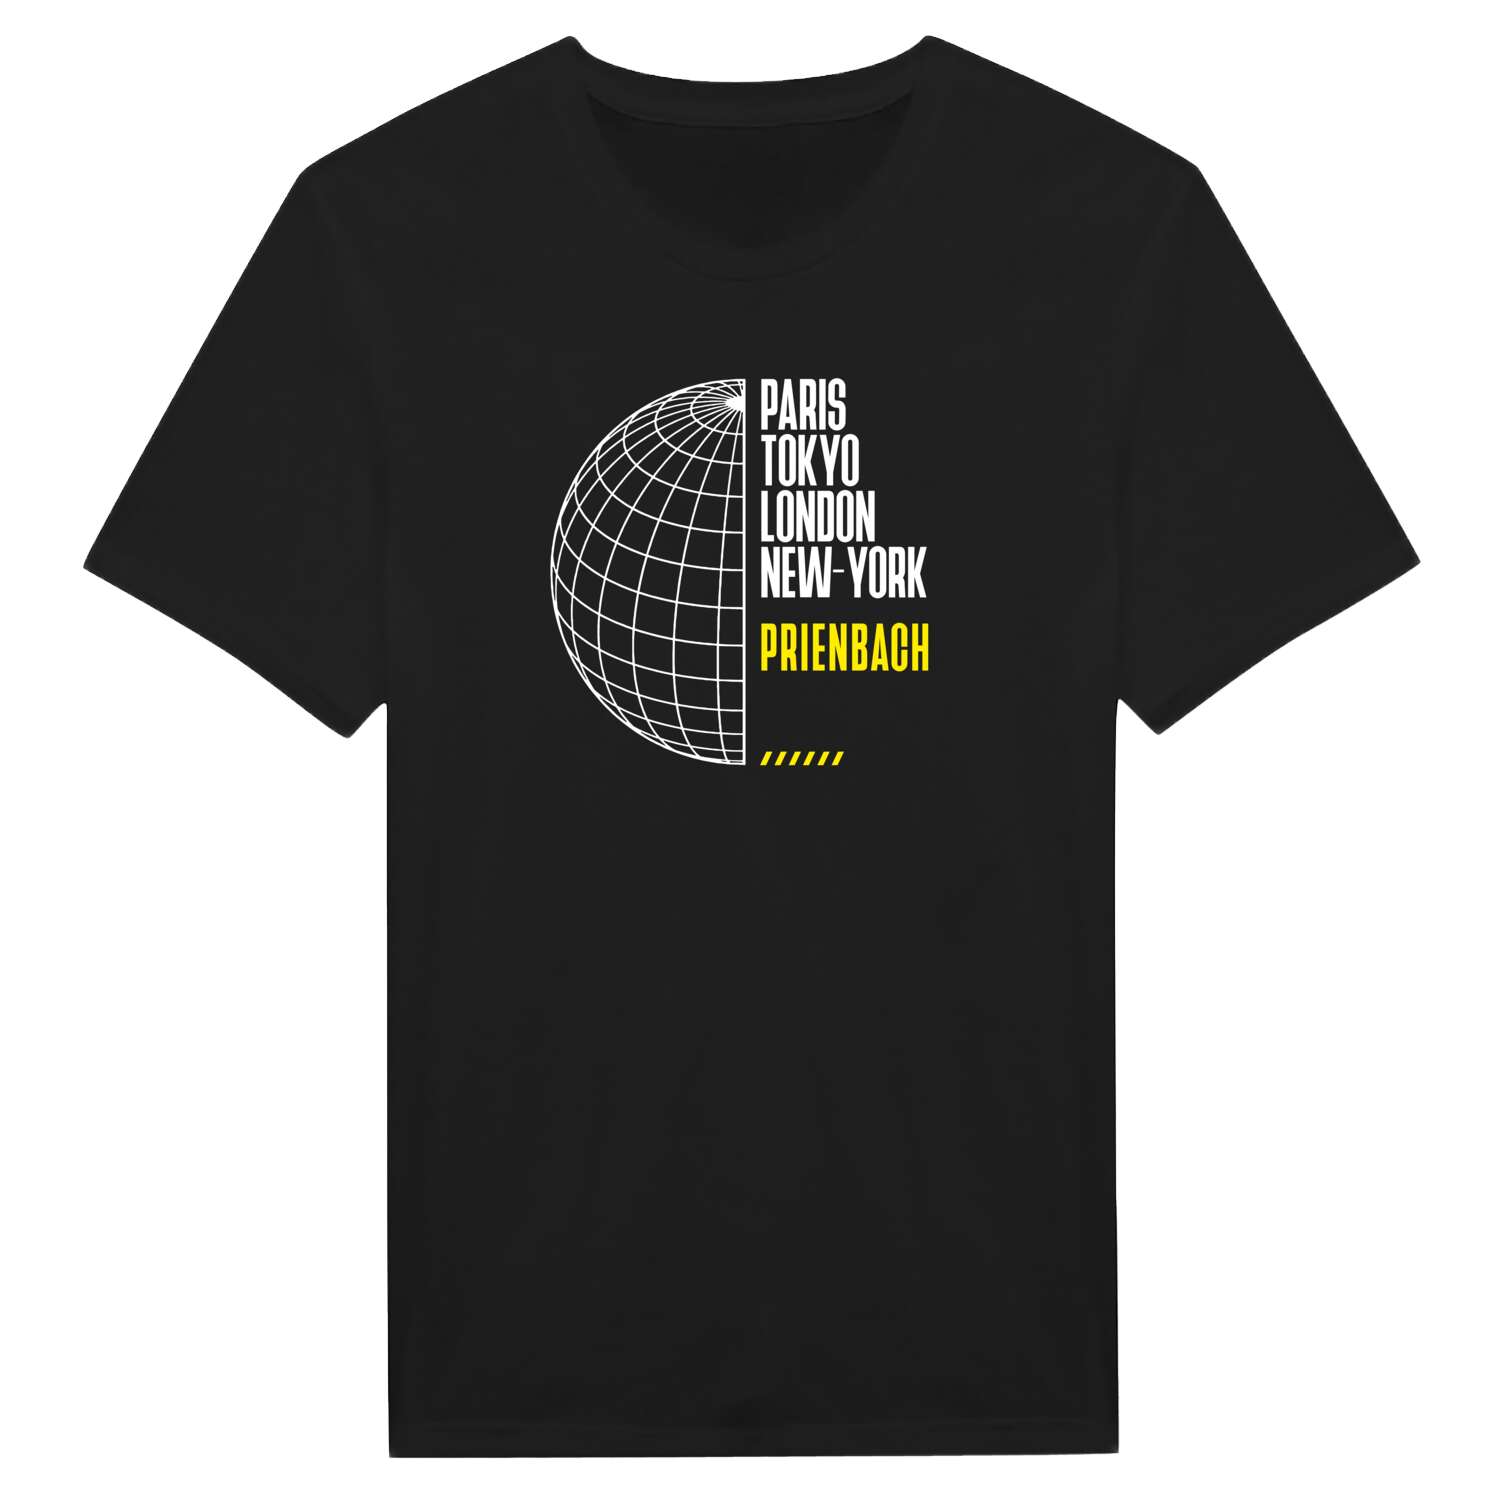 Prienbach T-Shirt »Paris Tokyo London«